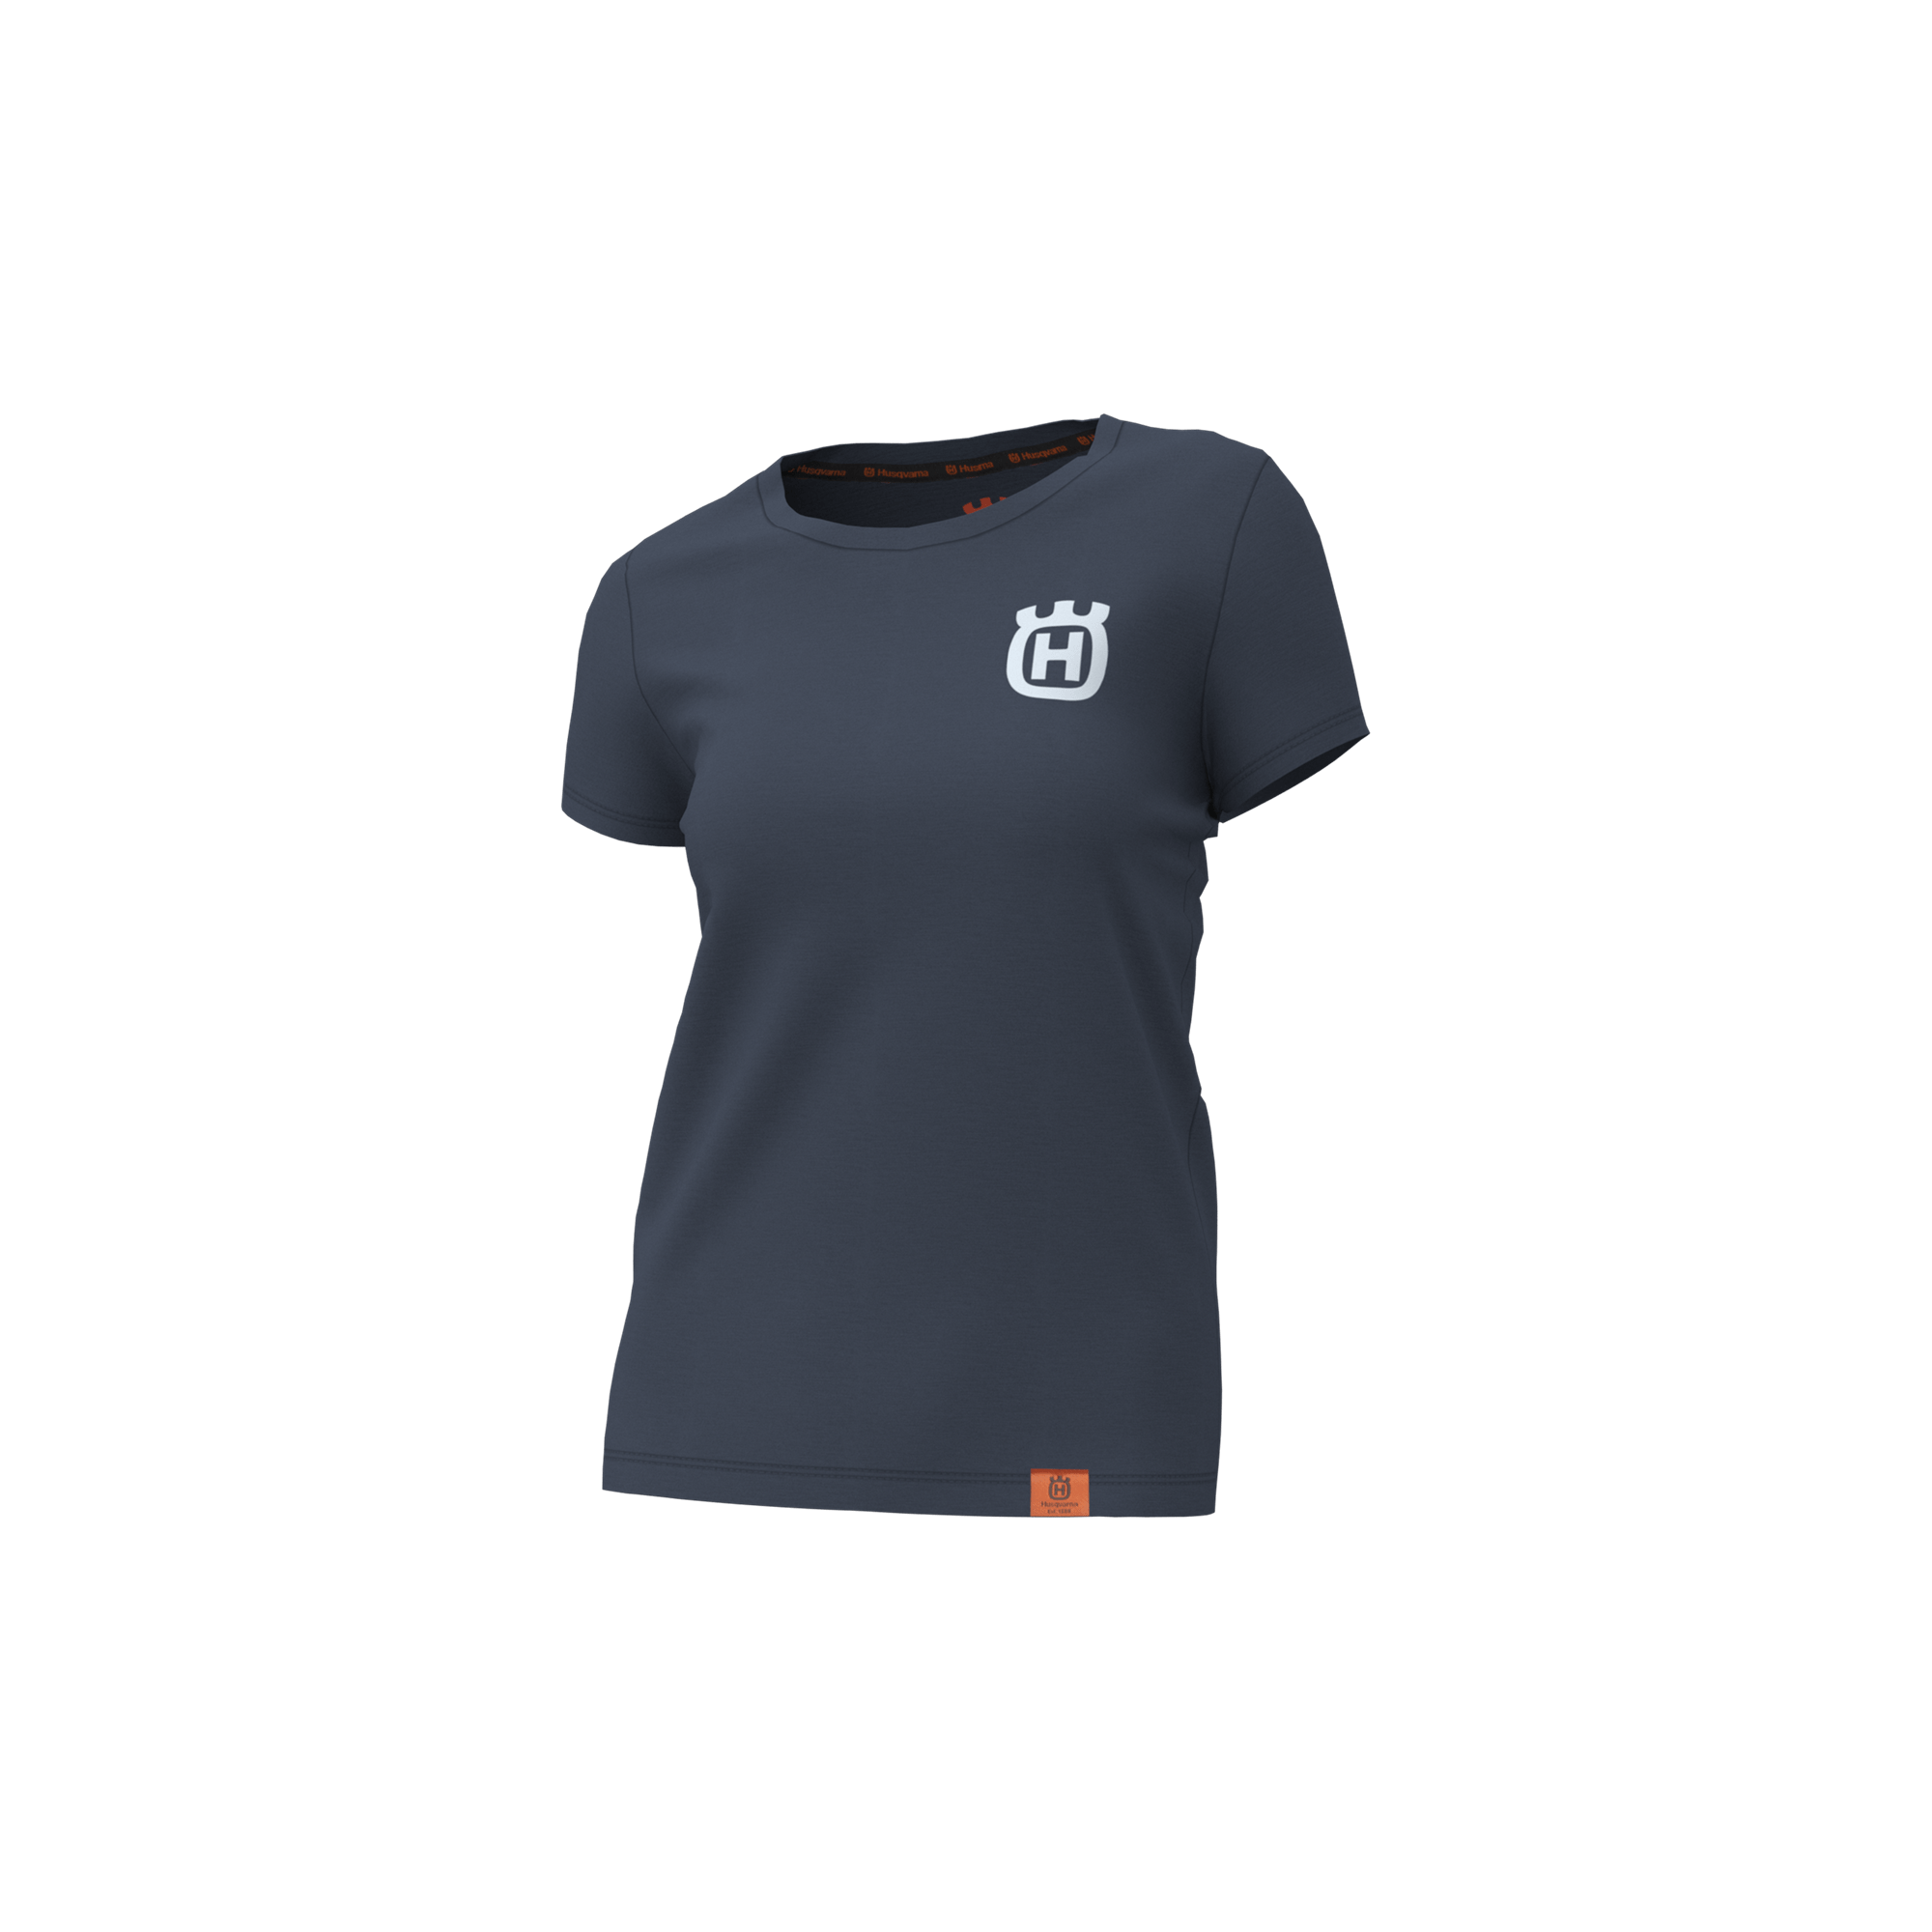 Image for Årgång Navy Women's Short-Sleeve T-Shirt from HusqvarnaB2C